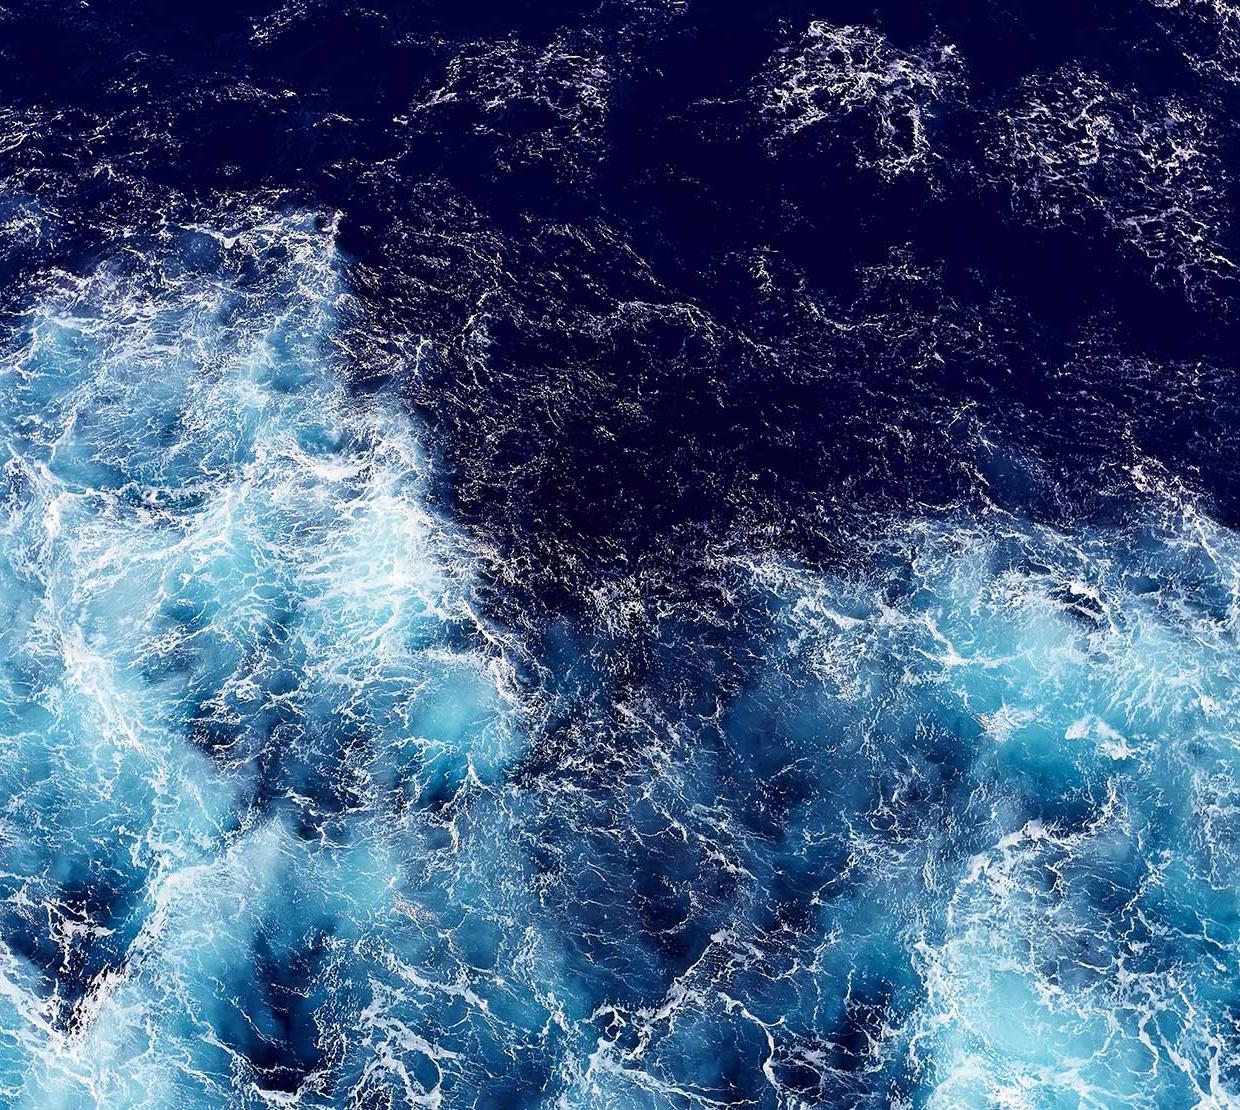 ocean wave forming